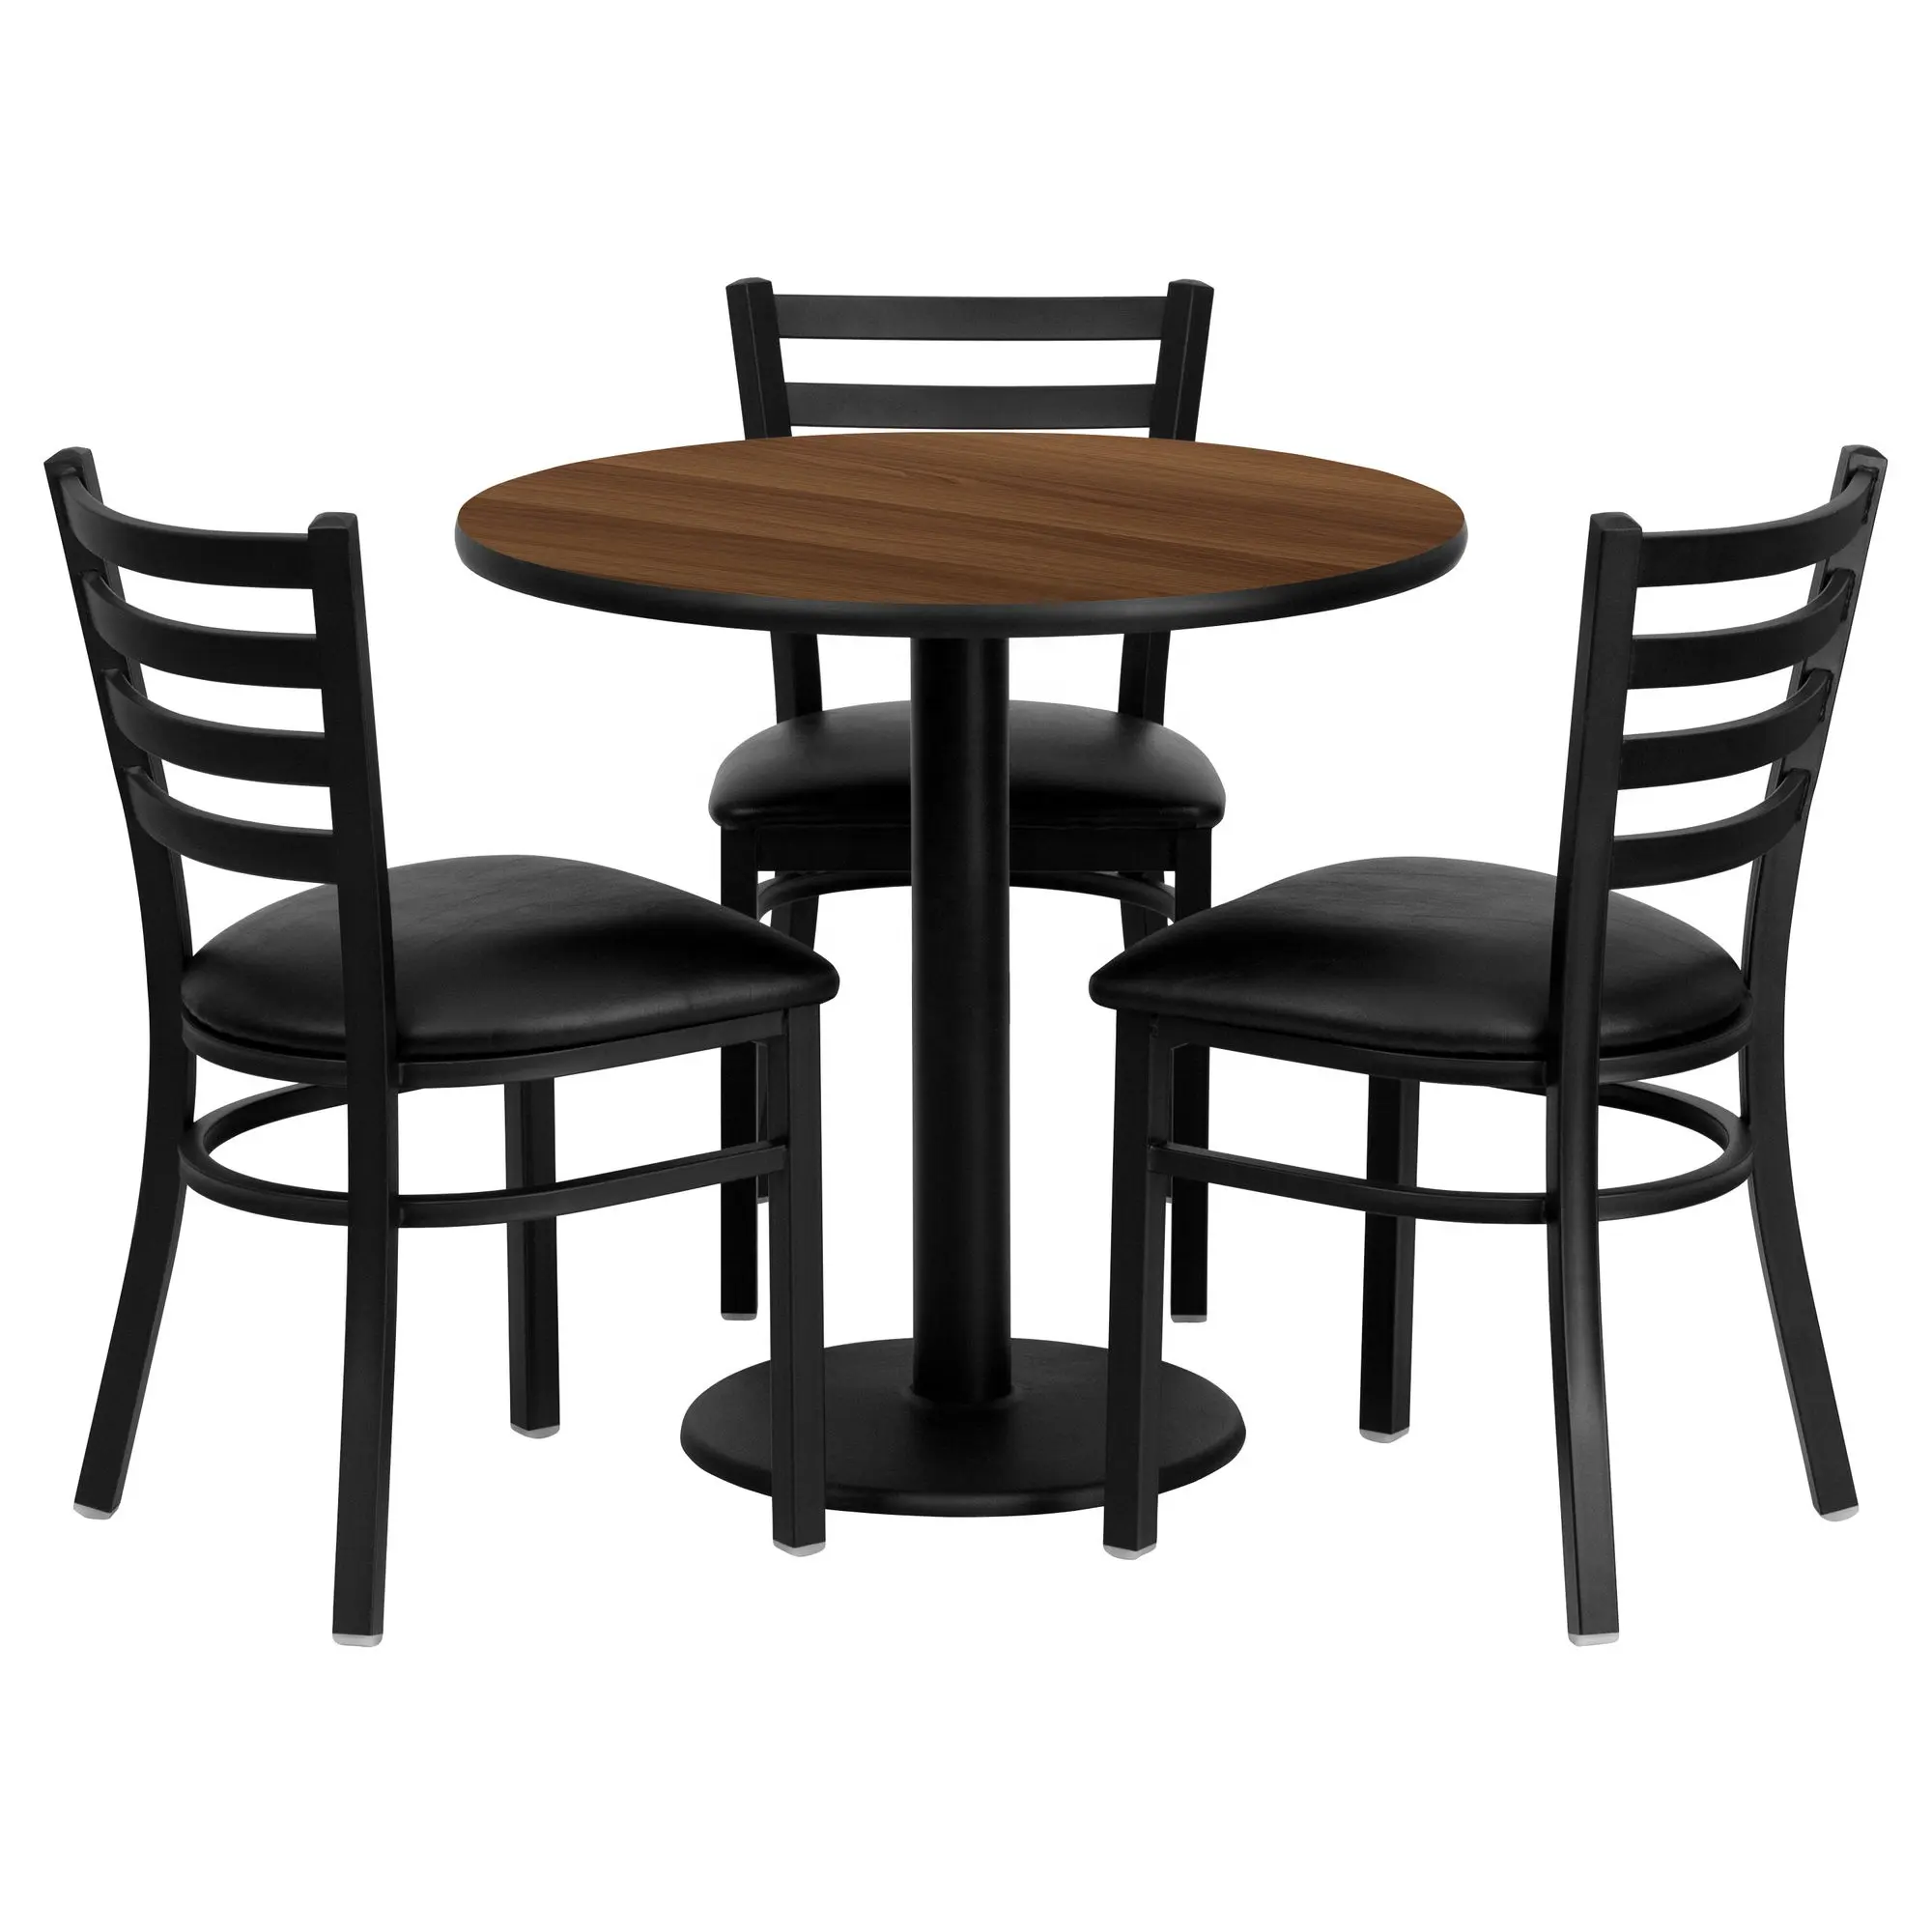 كامل مجموعة الحديثة رخيصة الهضاب الفقرة restaurante طاولات وكراسي الهضاب y sillas الجملة تستخدم مطعم الأثاث